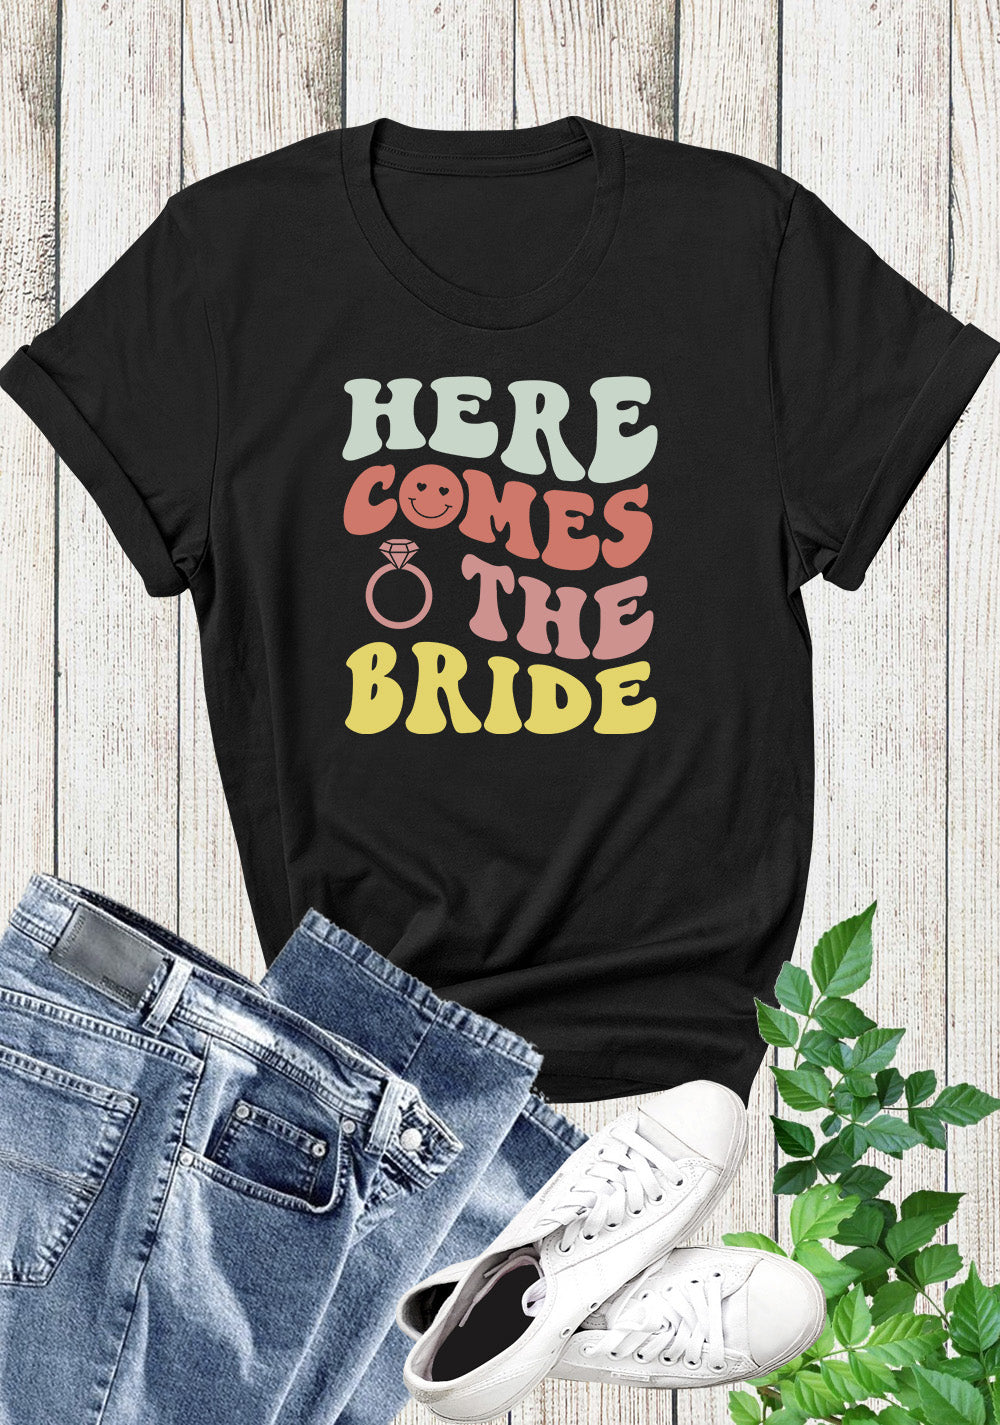 Bridal Party t-shirts